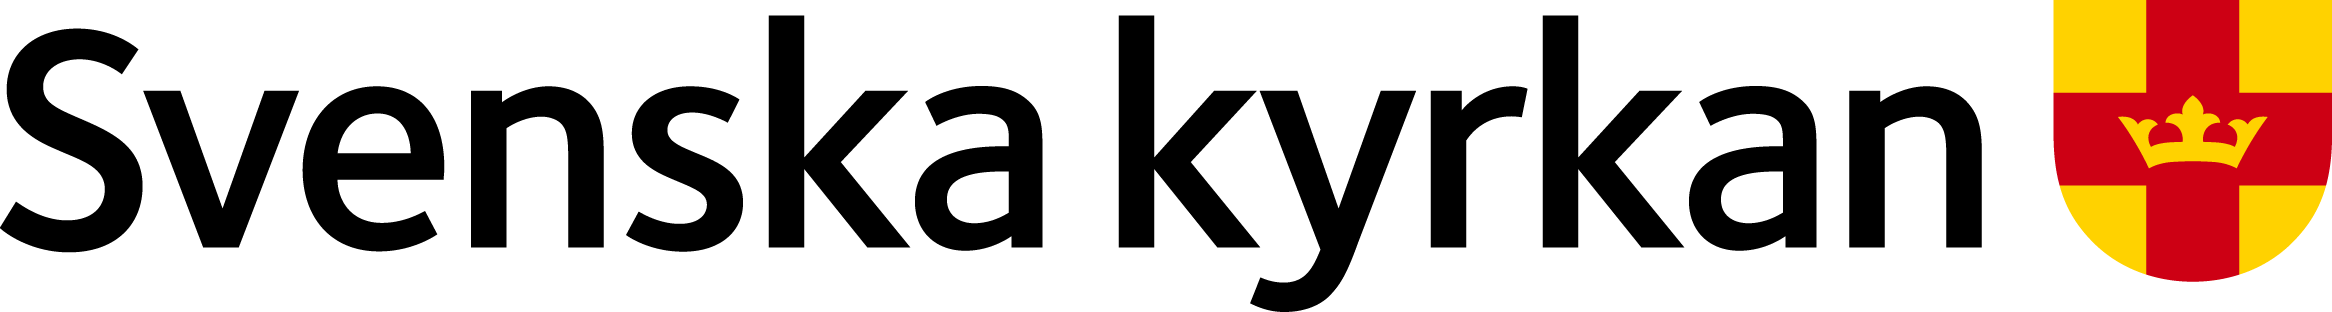 Svenska kyrkan logotyp